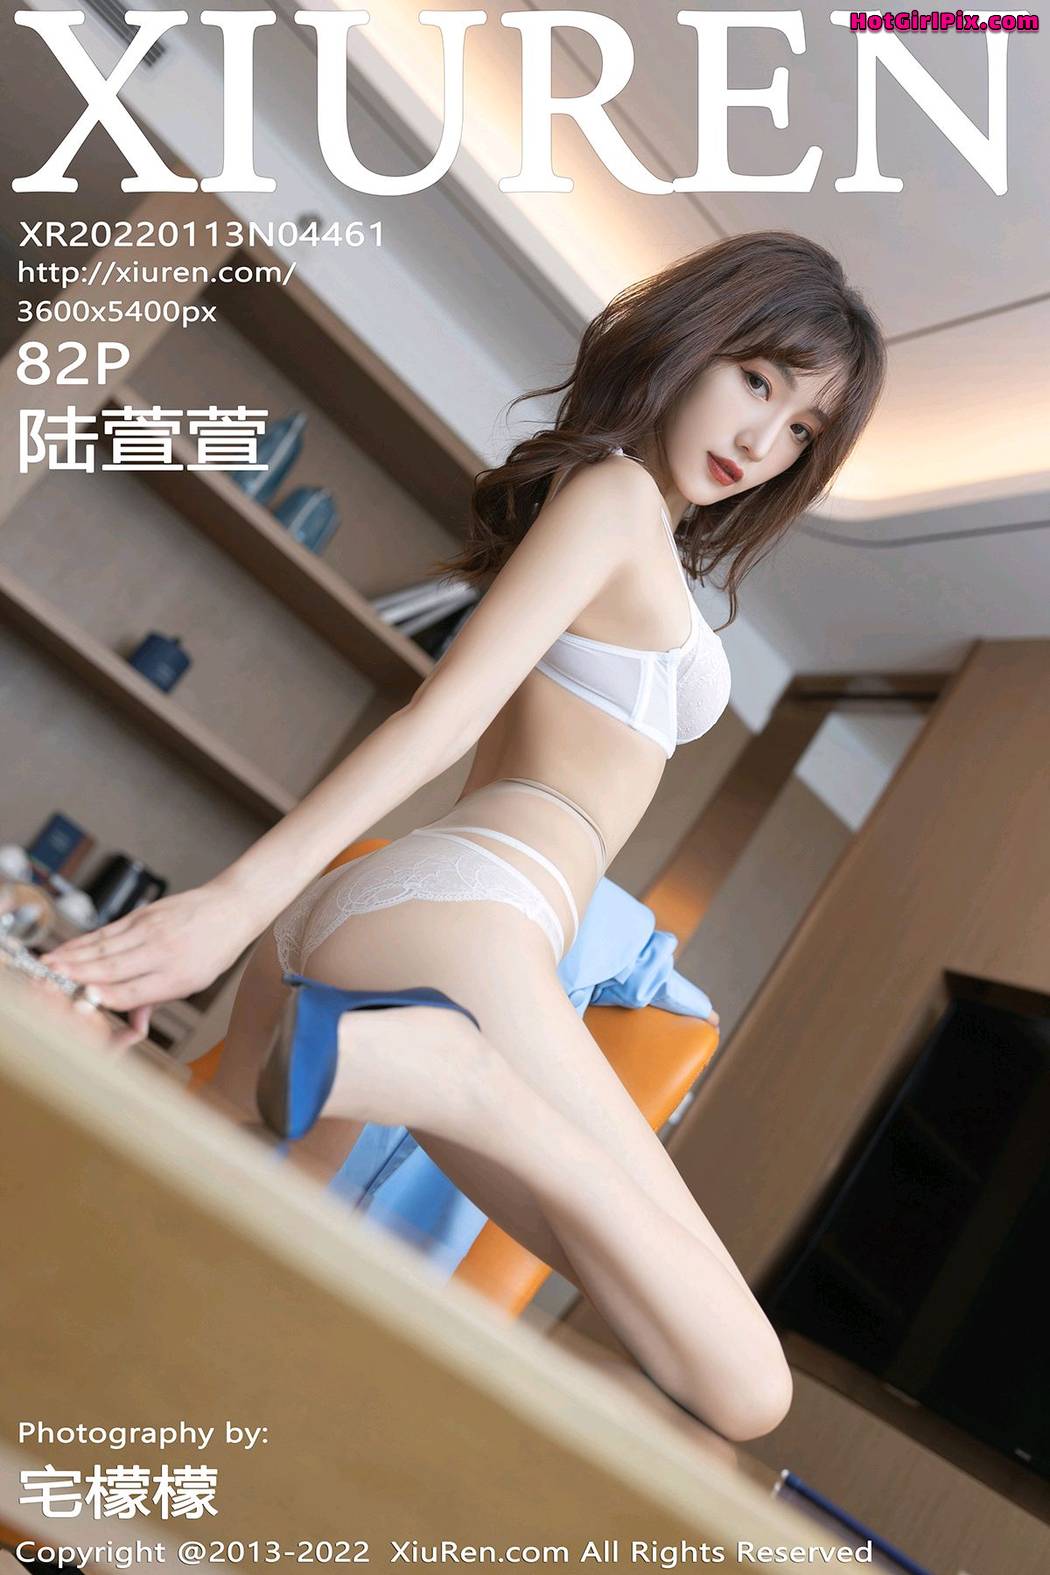 [XIUREN] No.4461 Lu Xuan Xuan 陆萱萱 Cover Photo